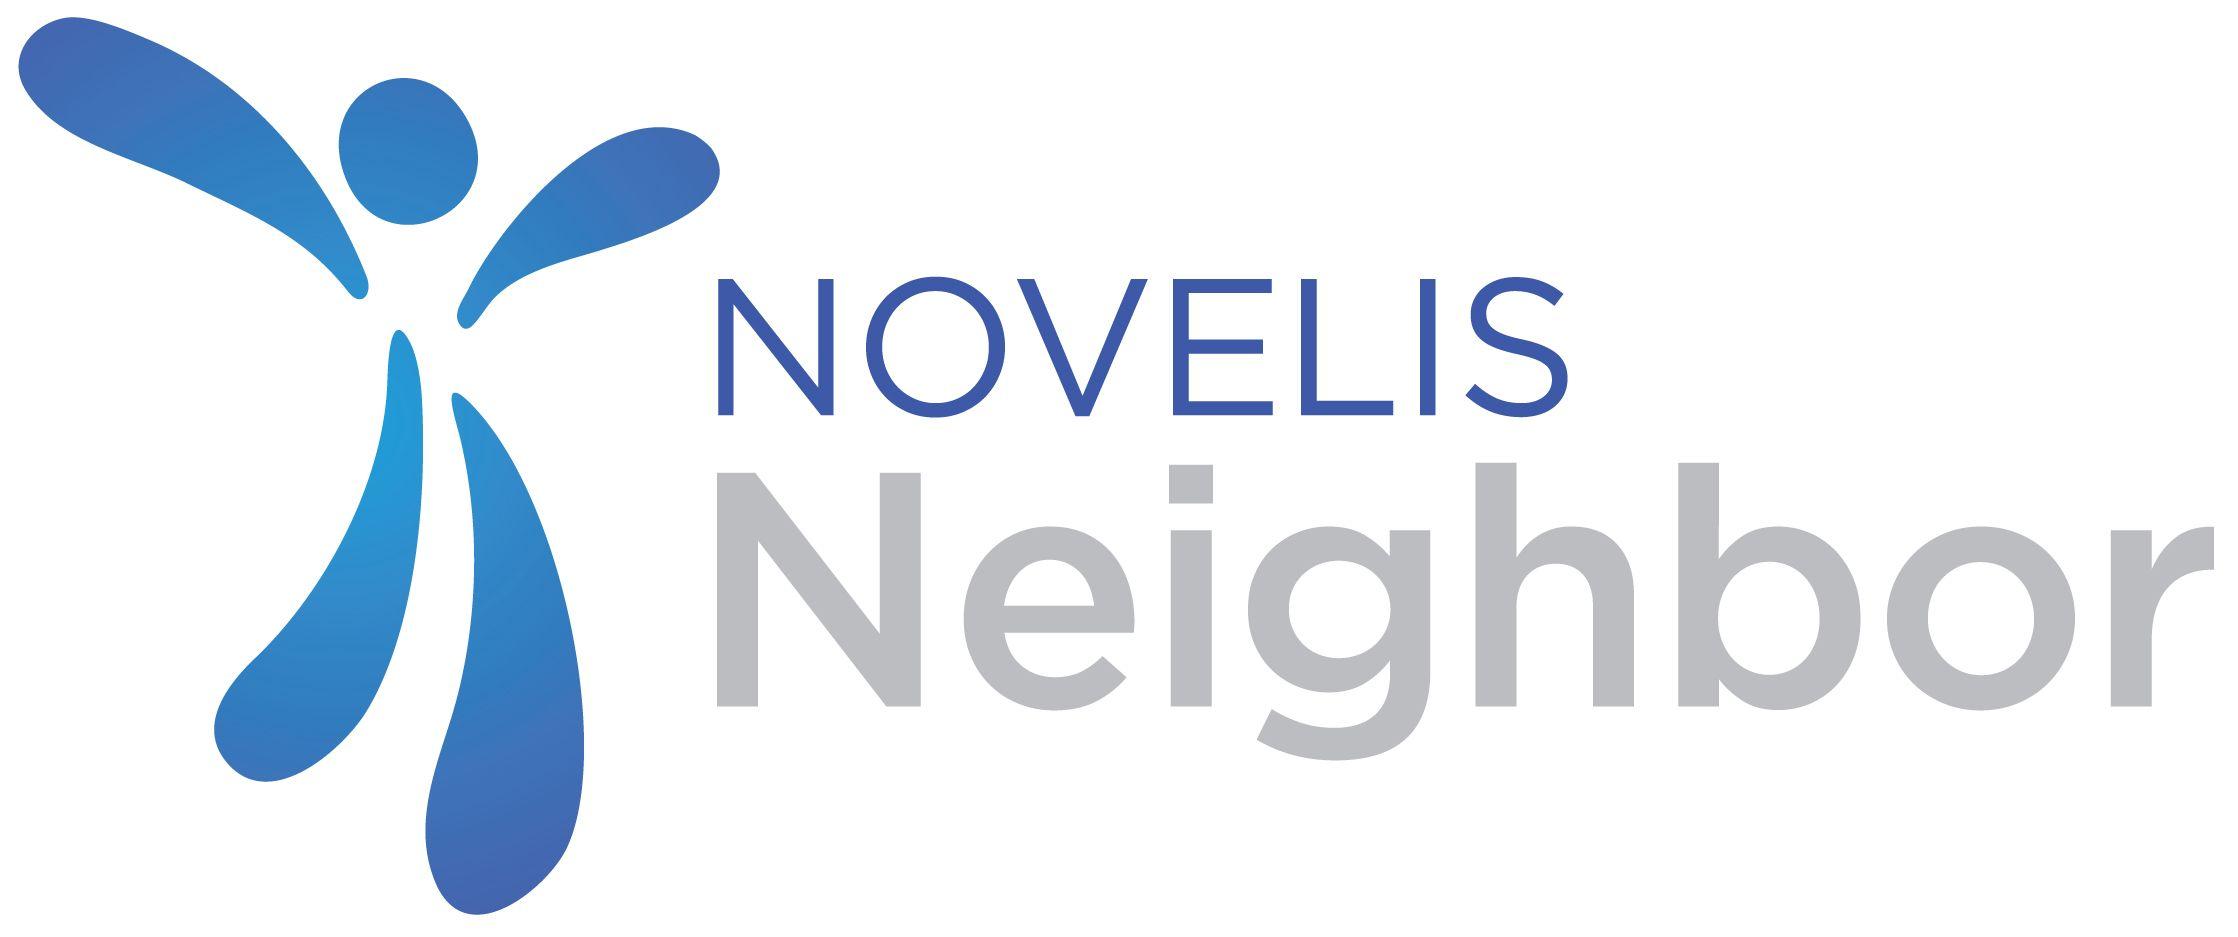 Novelis Logo - Community Service | Novelis